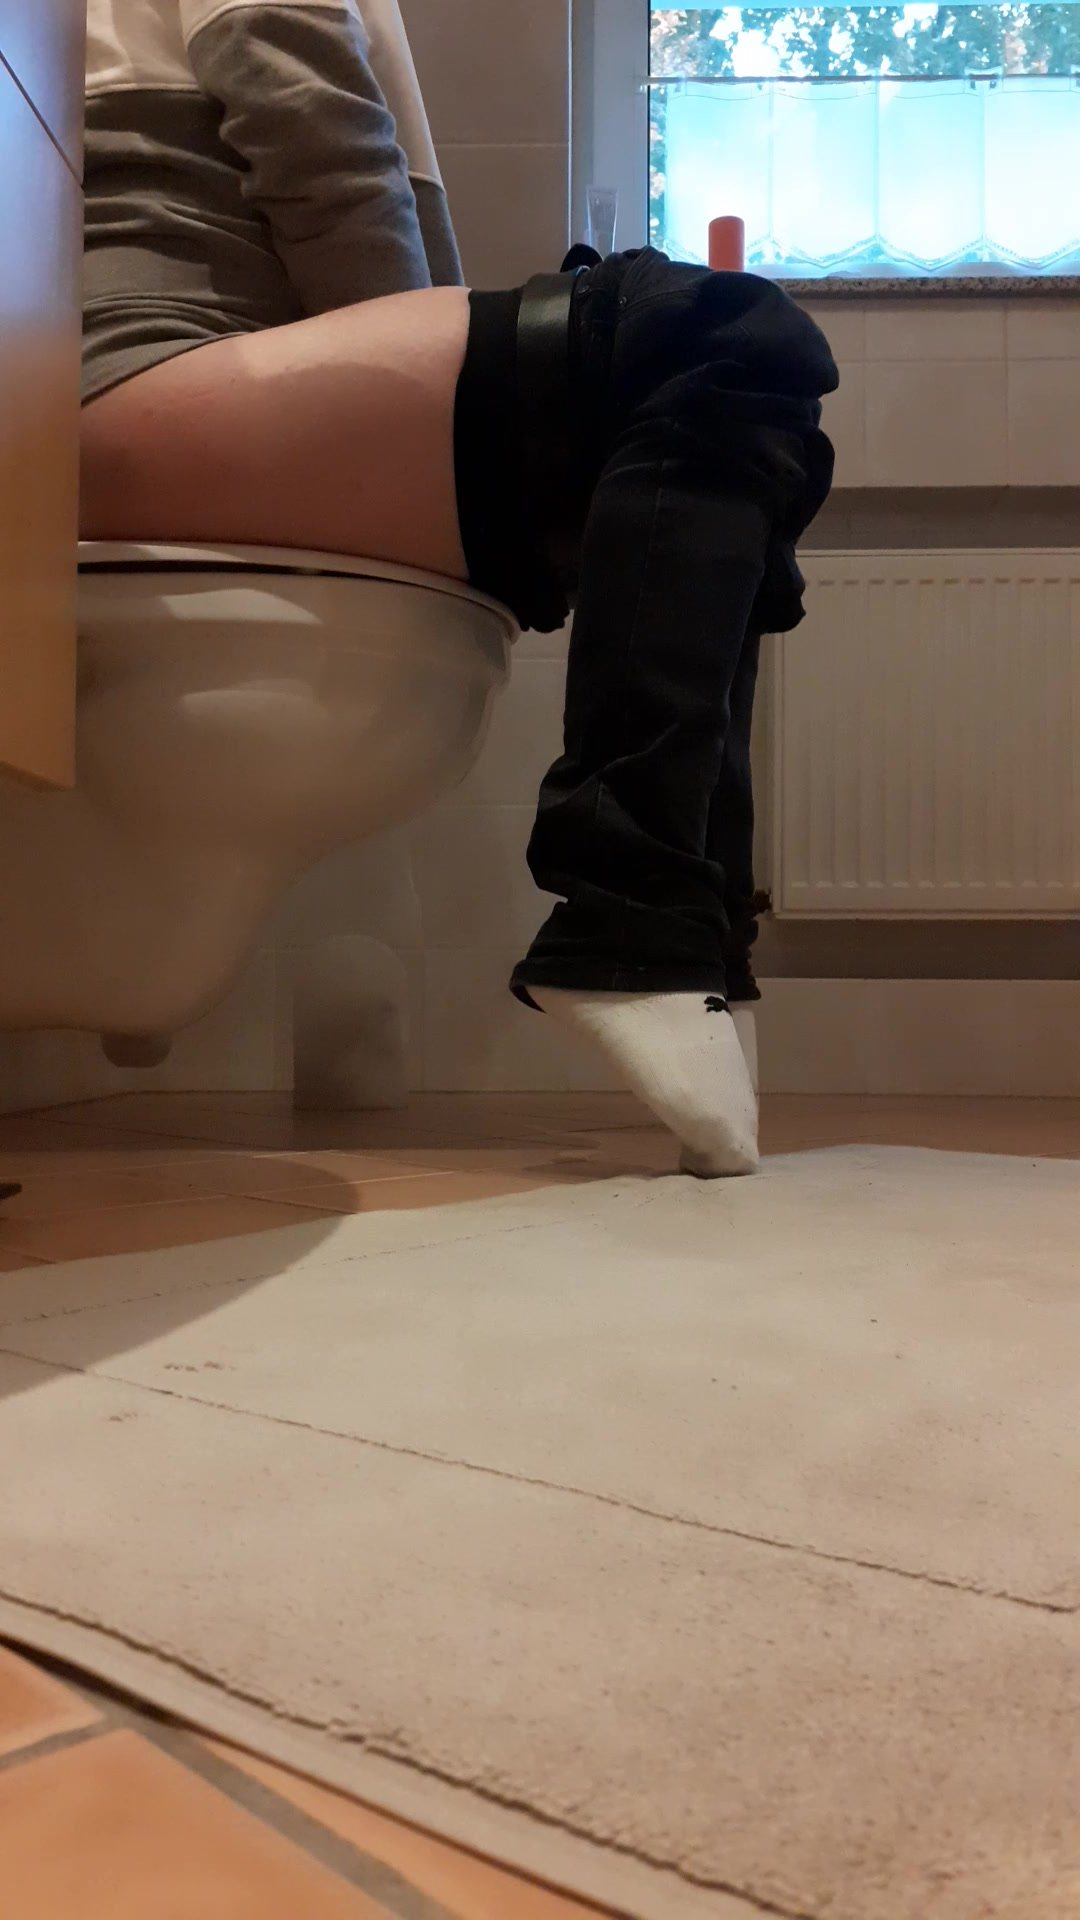 Pooping on toilet - video 3